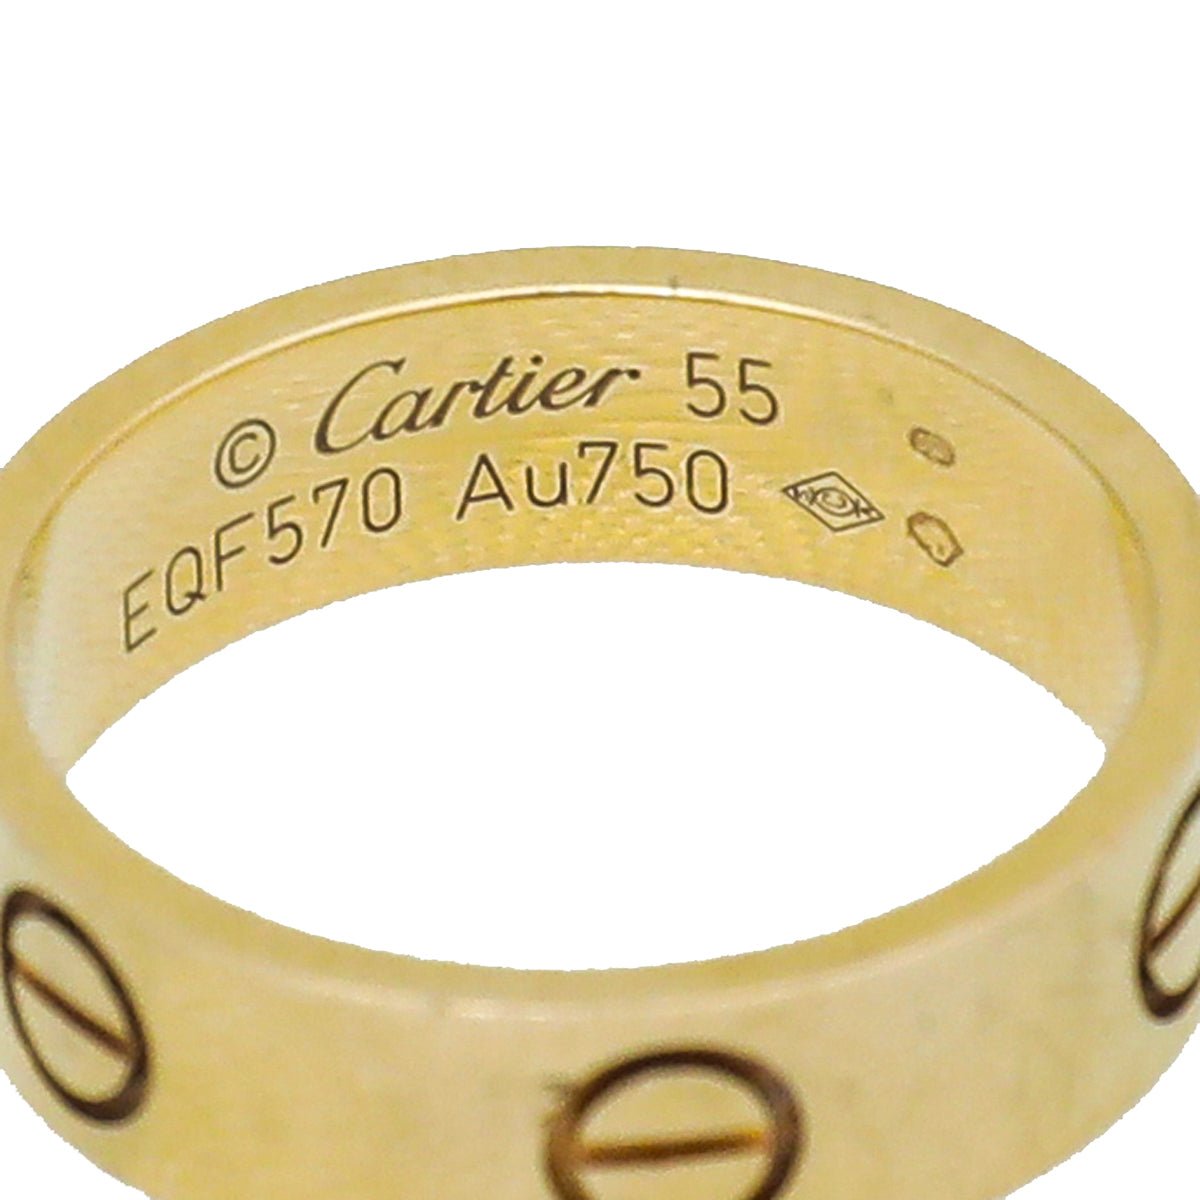 Cartier - Cartier18K Yellow Gold Love Ring 55 | The Closet